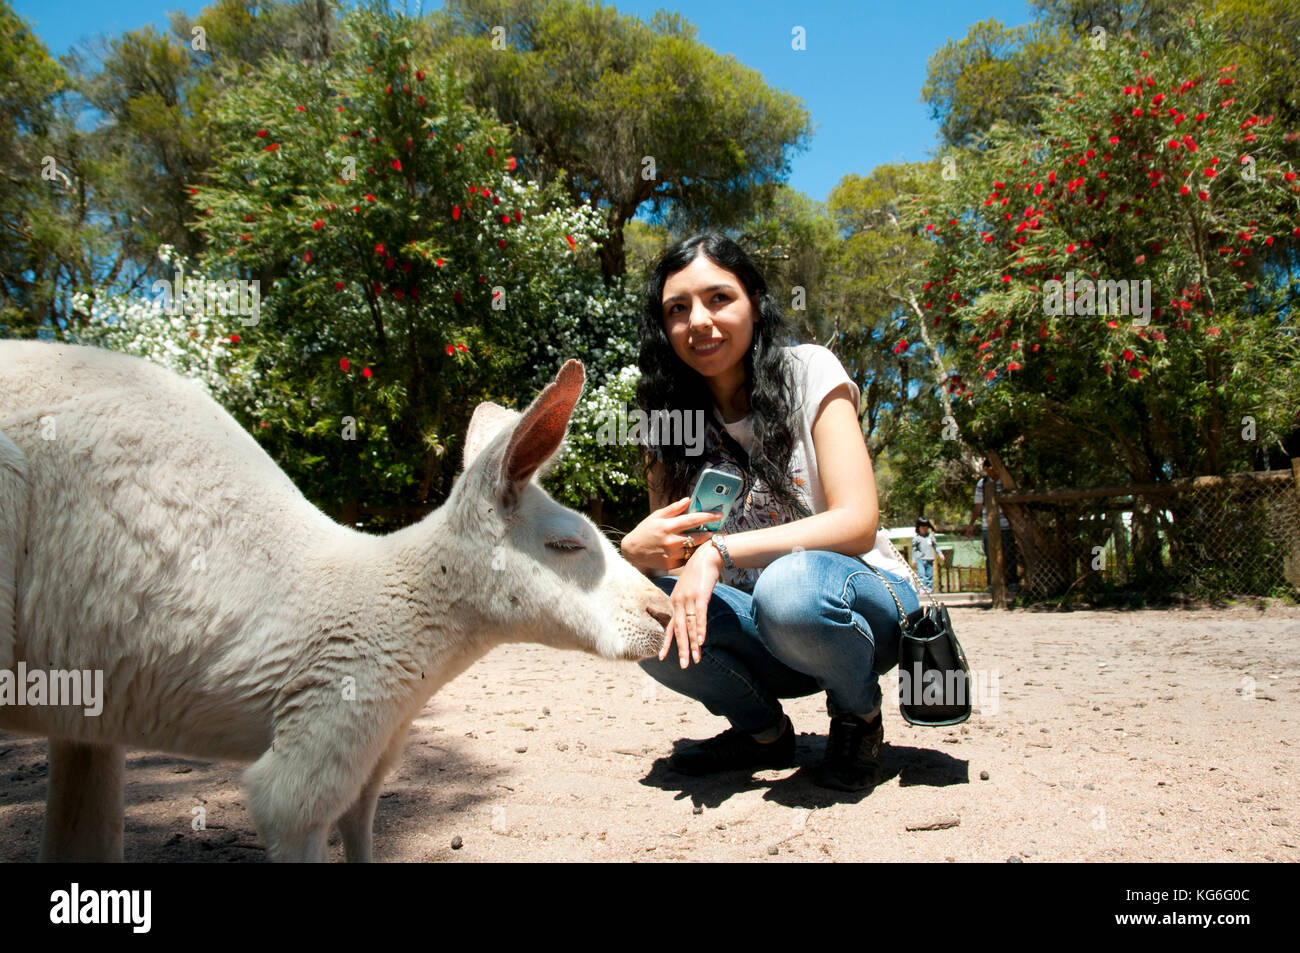 Tourist Posing with a Kangaroo - Australia Stock Photo